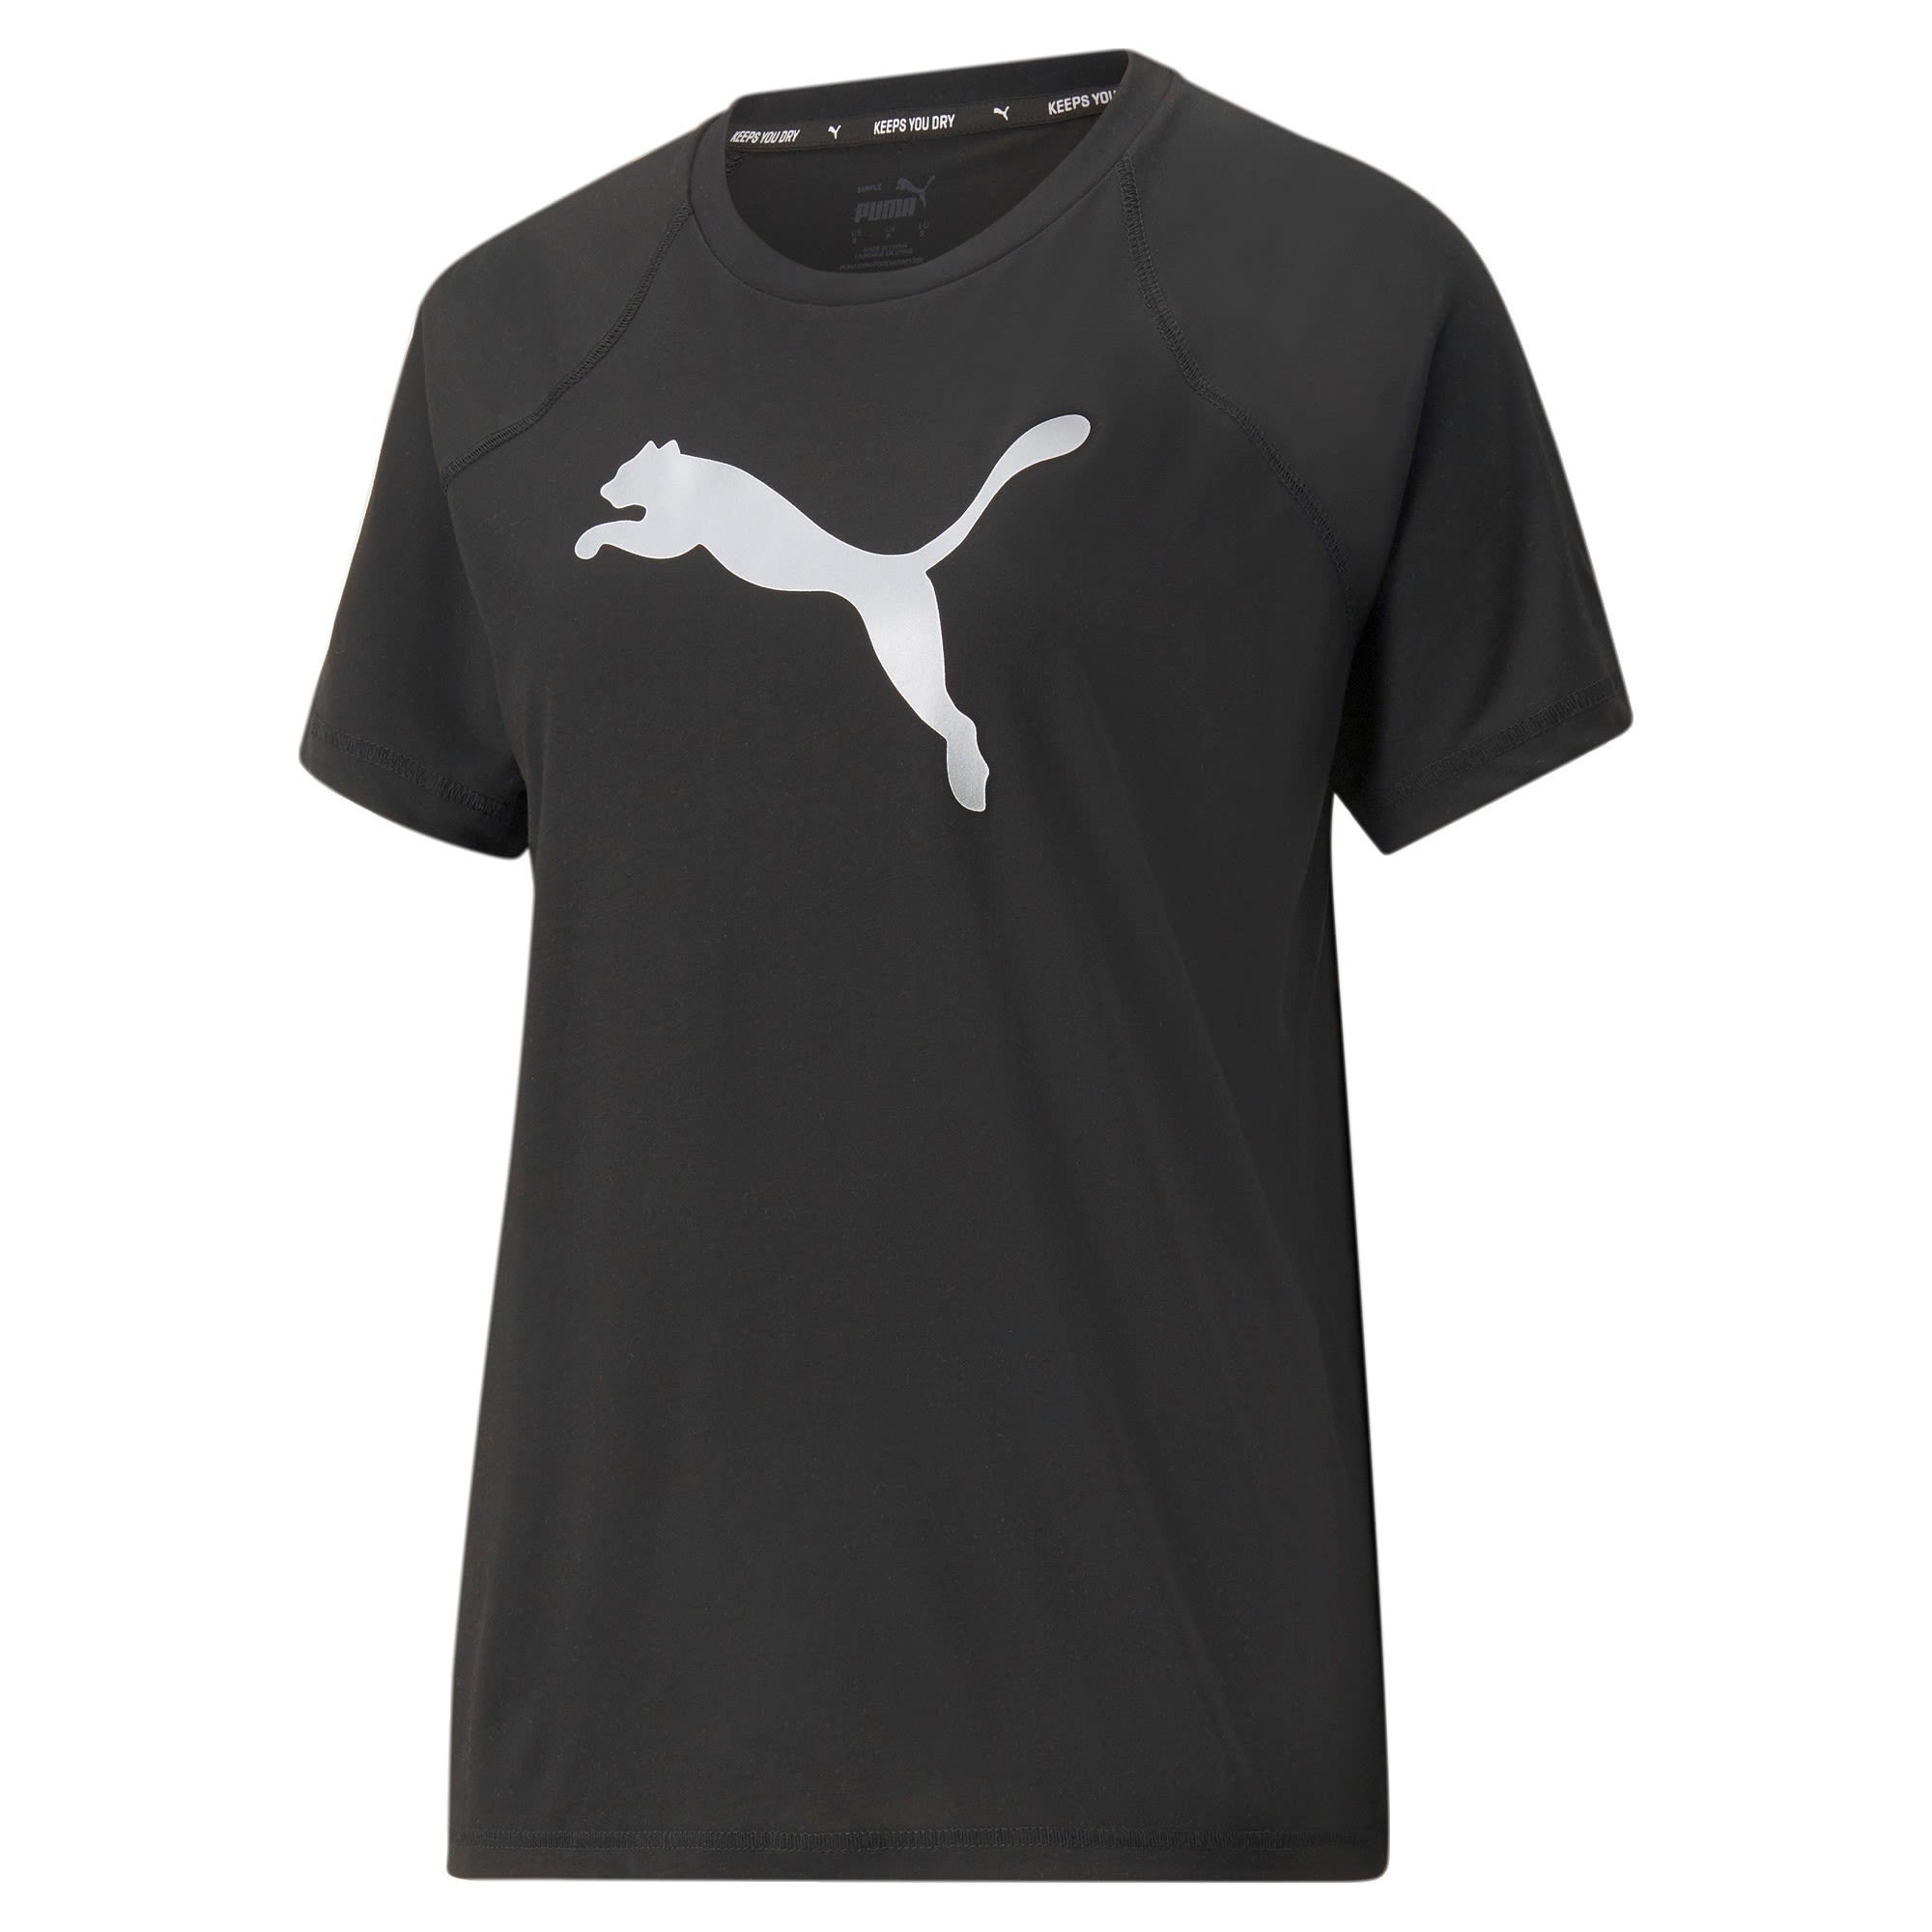 Puma Evostripe Tee Schwarz- Female Kurzarm-Shirts- Grsse L - Farbe Puma Black